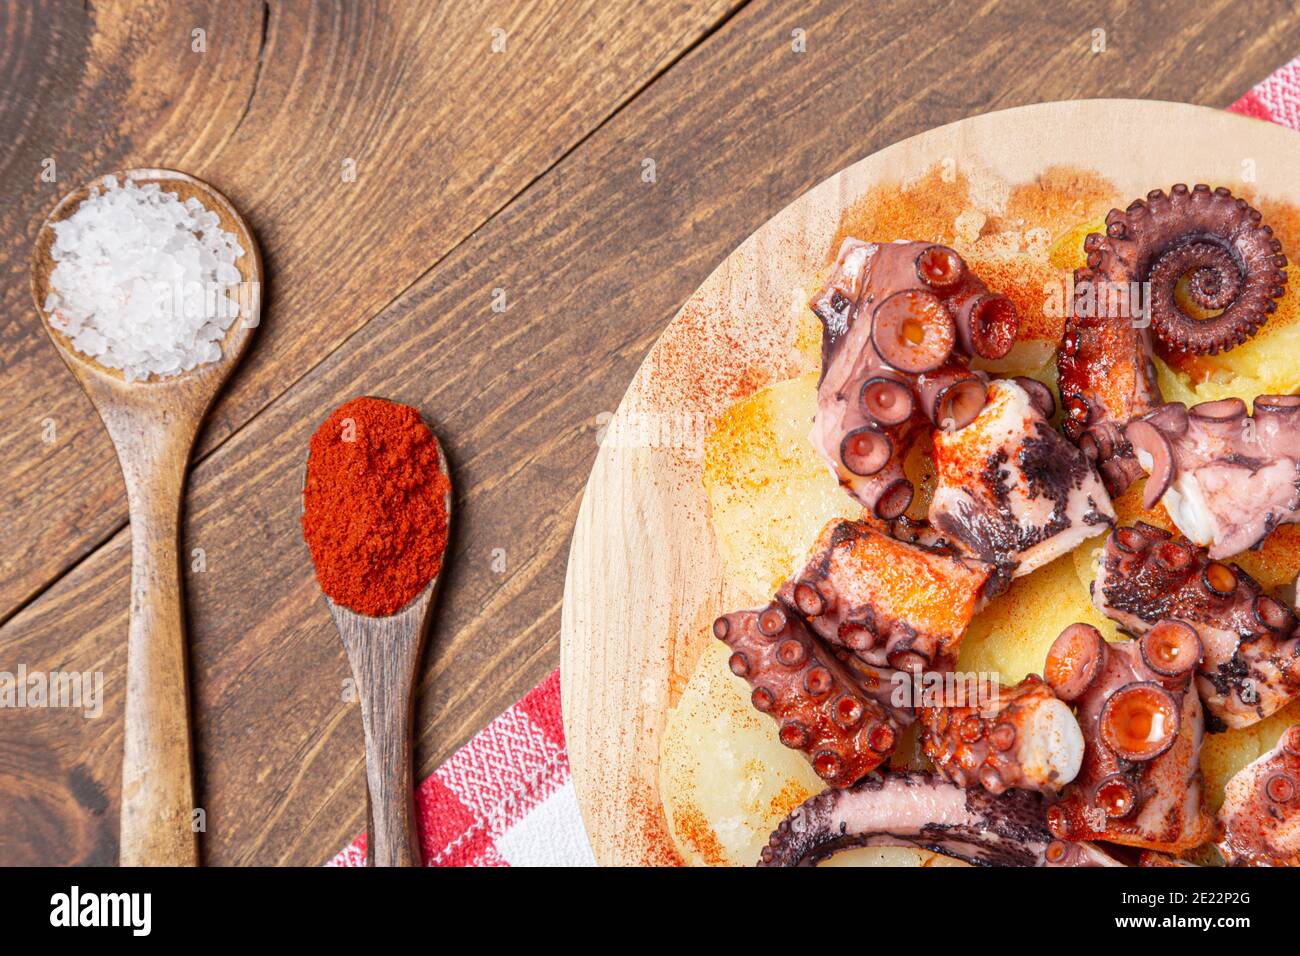 Pulpo a la gallega, poulpe galicienne avec paprika de pommes de terre, sel et huile d'olive. Tapa galicien typique espagnol, sur une assiette traditionnelle en bois. Typique Banque D'Images